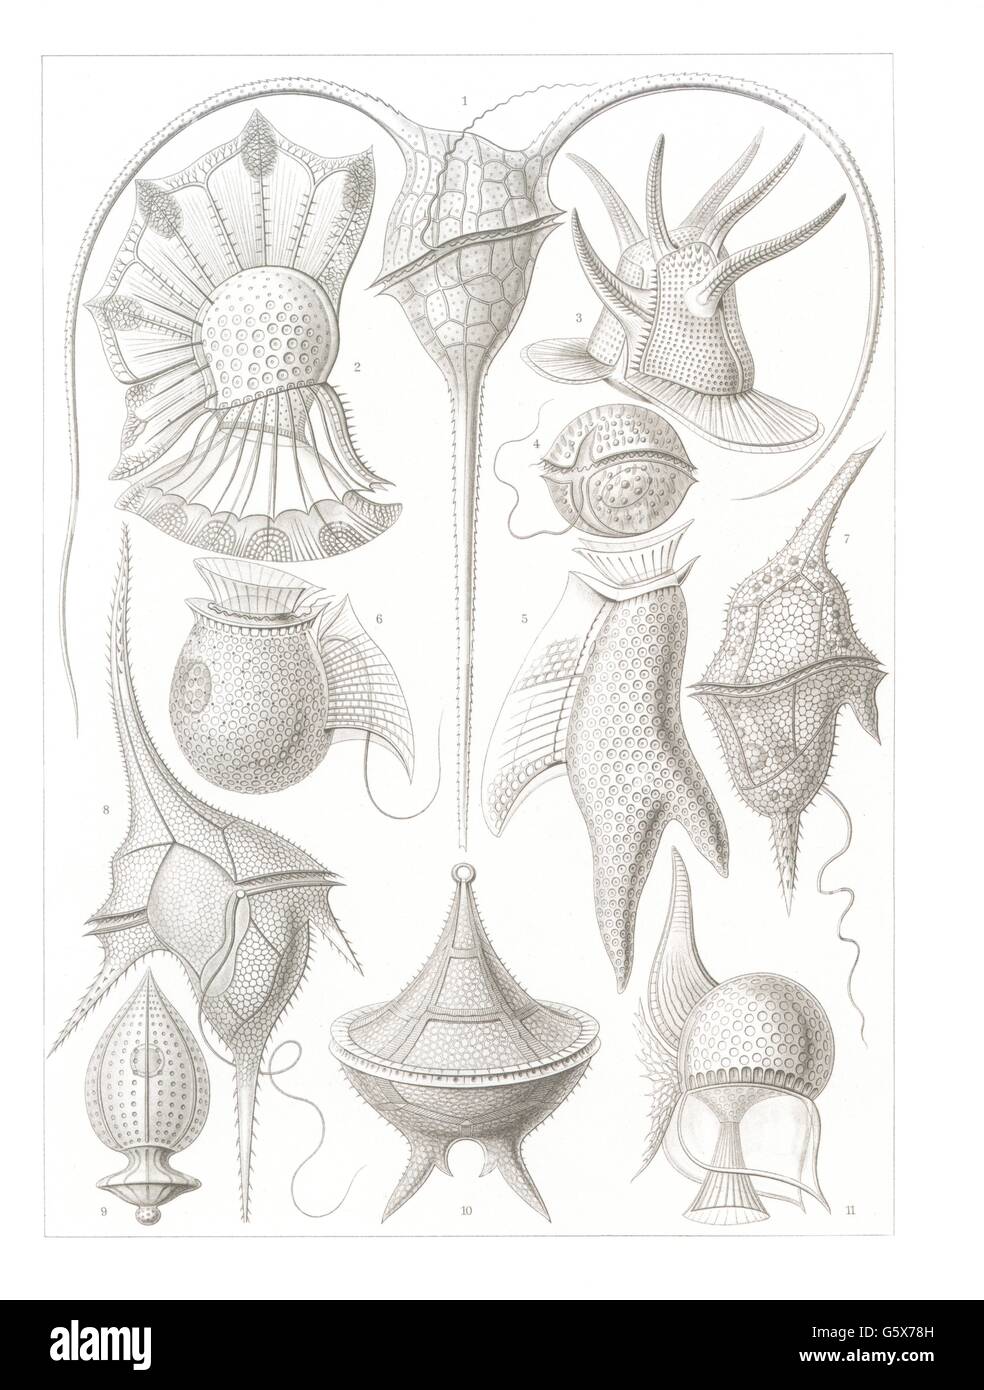 zoologie / Tiere, Dinoflagellaten (Dinoflagellata), Farblithographie, aus: Ernst Haeckel, 'Kunstformen der Natur', Leipzig - Wien, 1899 - 1904, Additional-Rights-Clearences-not available Stockfoto